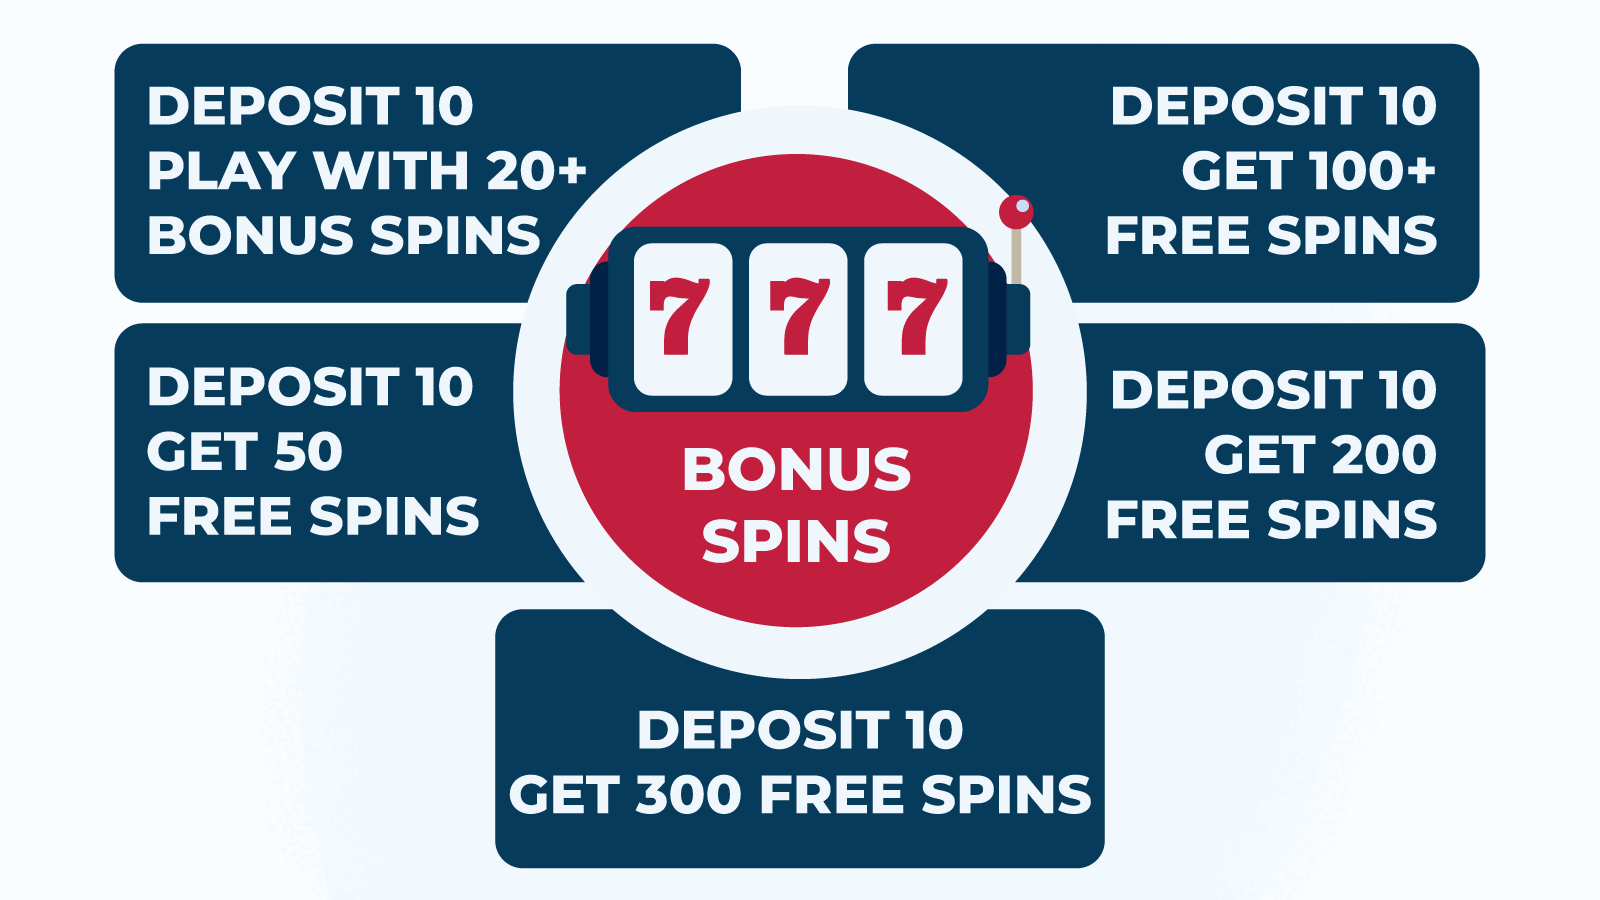 Deposit 10 Get Bonus Spins